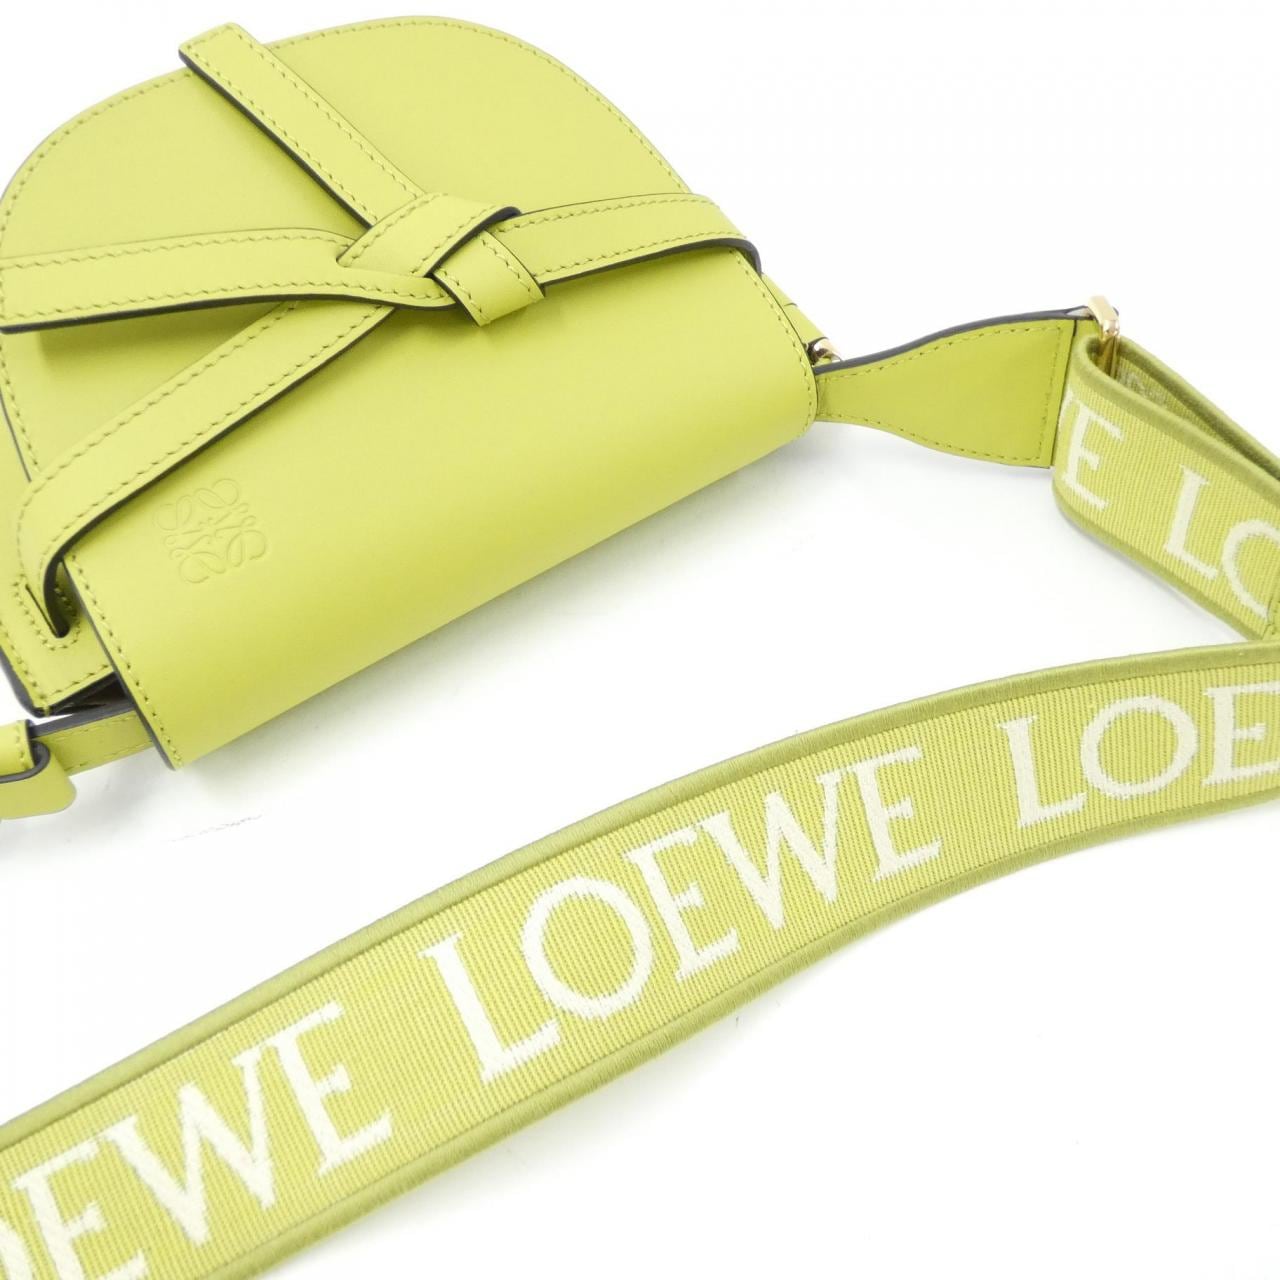 [新品] Loewe Gate 双迷你包 A650N46X13 单肩包